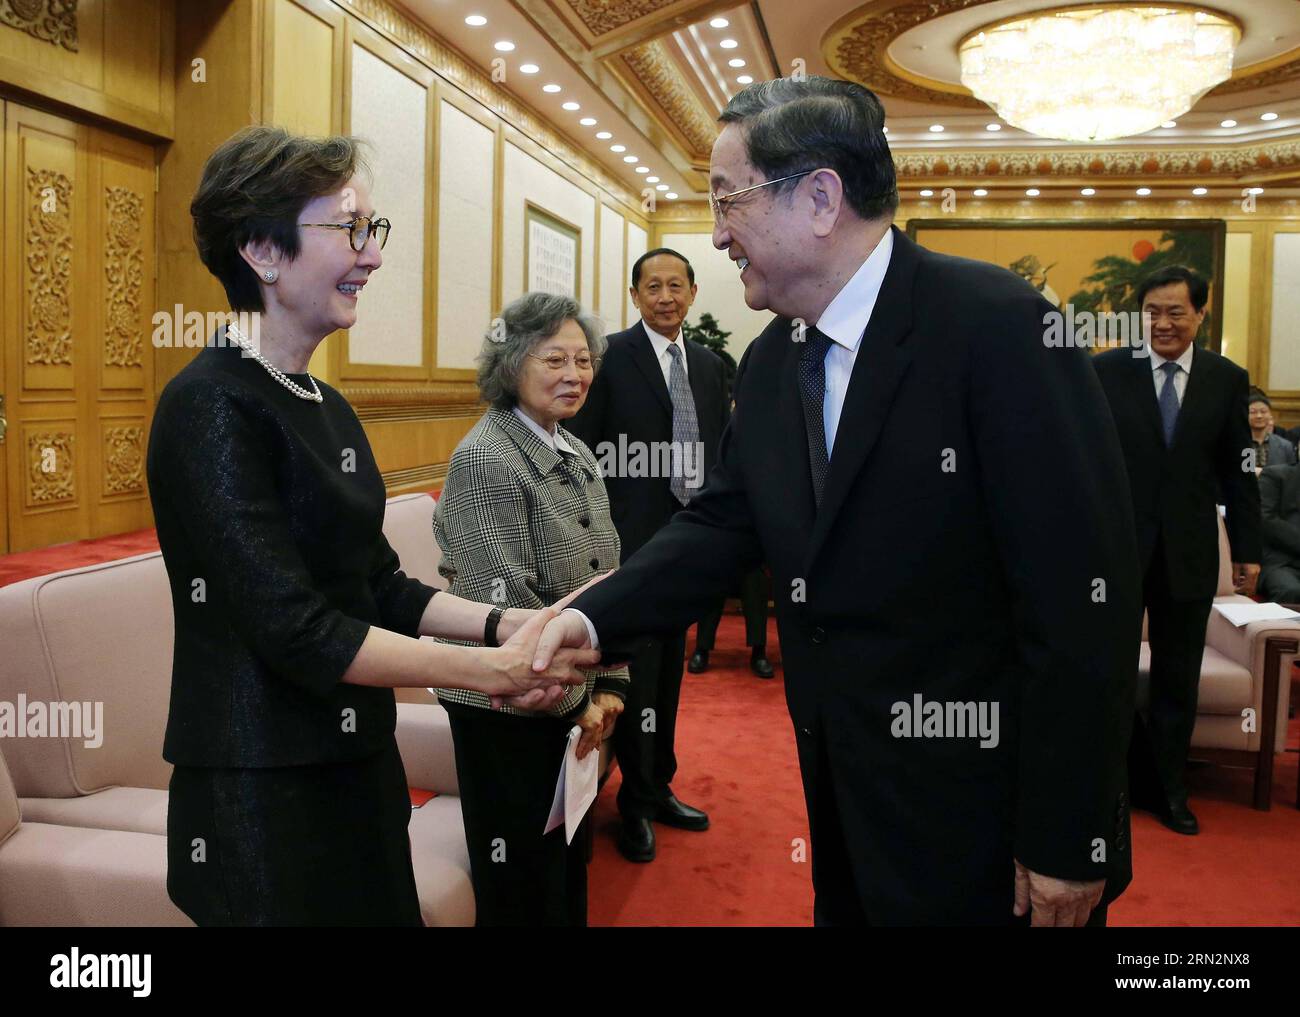 (150318) -- PÉKIN, le 18 mars 2015 -- Yu Zhengsheng(R), président du Comité national de la Conférence consultative politique du peuple chinois (CCPPC) et membre du Comité permanent du Bureau politique du Comité central du Parti communiste chinois (PCC), assiste à un symposium commémorant le 100e anniversaire de naissance de Seypidin Azizi et rencontre ses proches à Beijing, capitale de la Chine, le 18 mars 2015. (Zwx) CHINA-BEIJING-YU ZHENGSHENG-SEYPIDIN AZIZI-BIRTH ANNIVERSARY-SYMPOSIUM(CN) LiuxWeibing PUBLICATIONxNOTxINxCHN Beijing Mars 18 2015 Yu Zheng Sheng r Président Banque D'Images